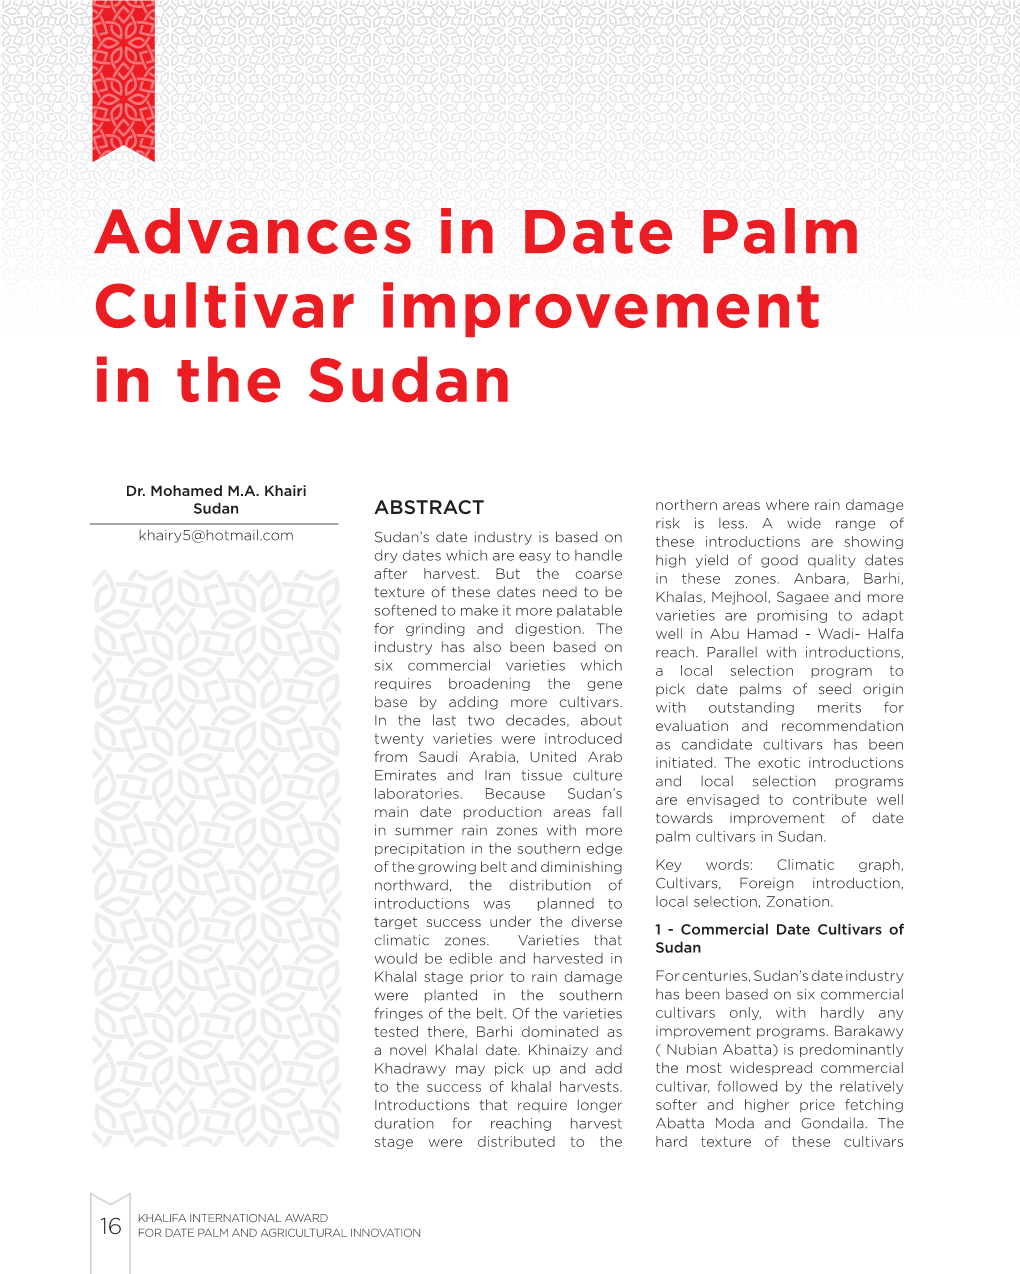 Advances in Date Palm Cultivar Improvement in the Sudan